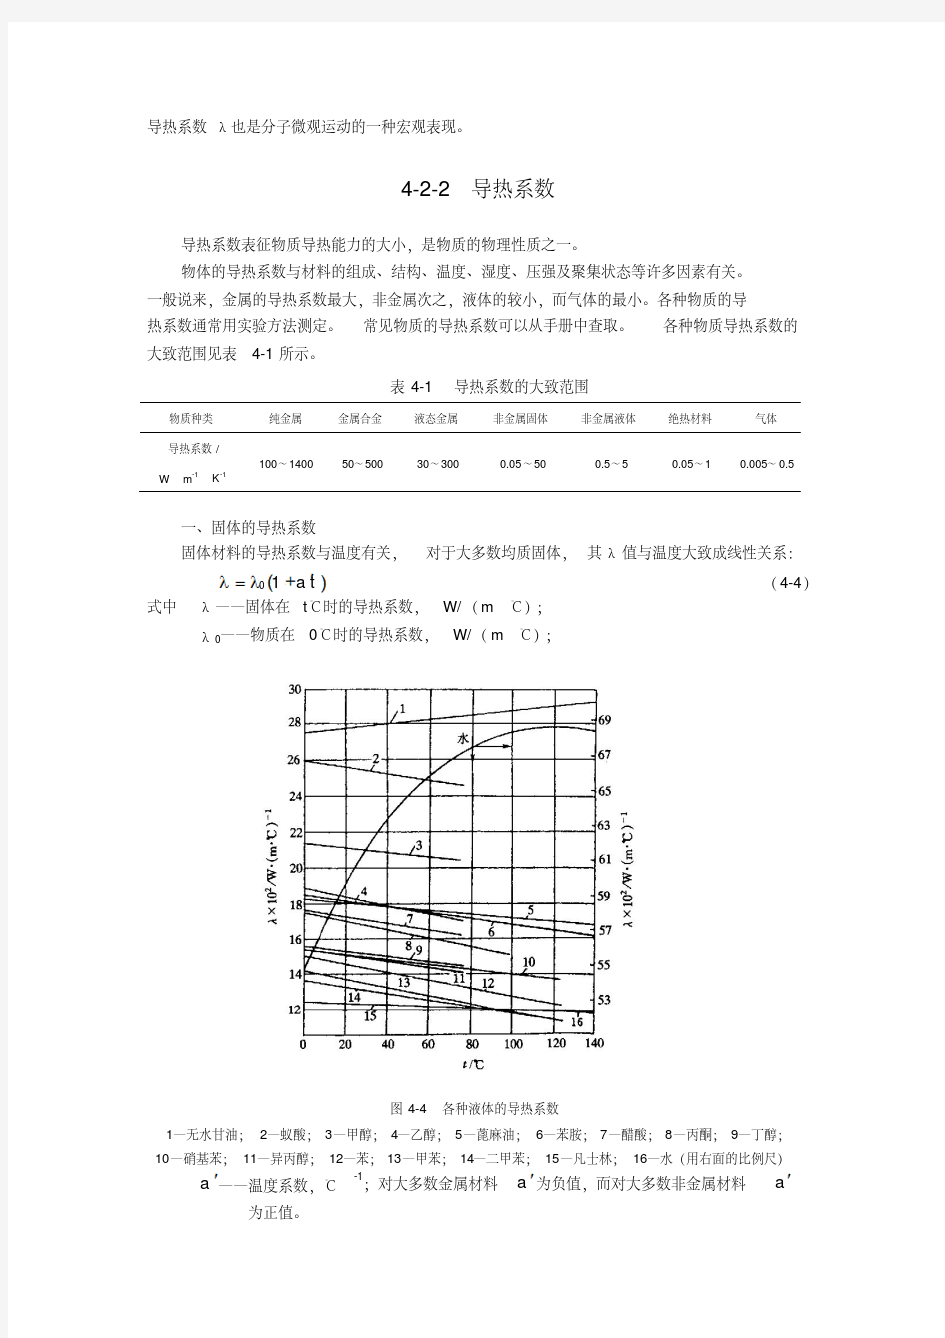 导热理论-热传导原理.pdf